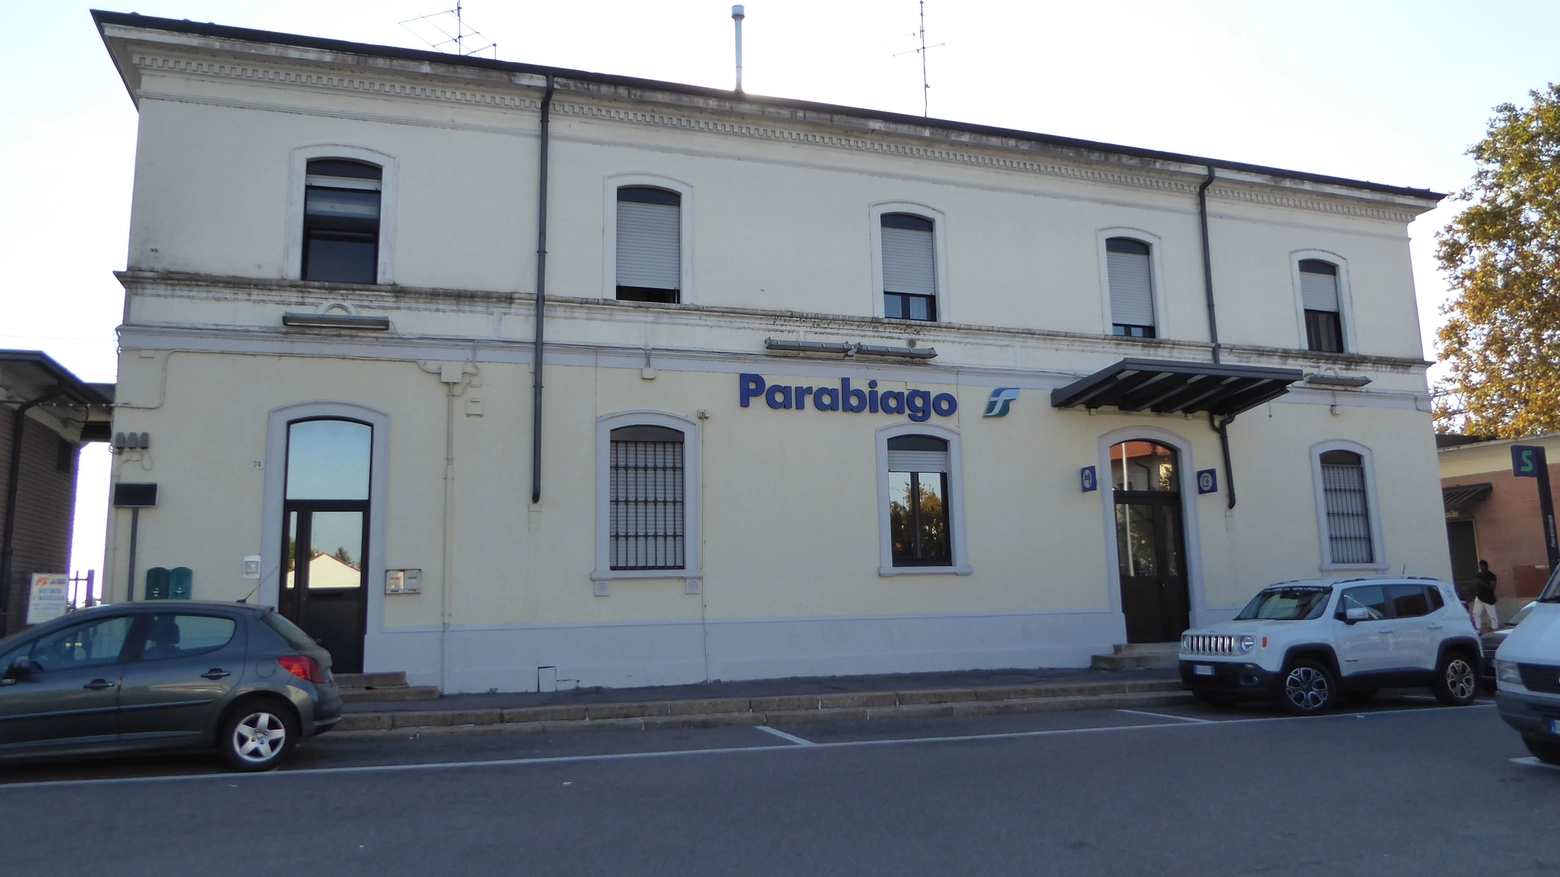 La stazione ferroviaria di Parabiago